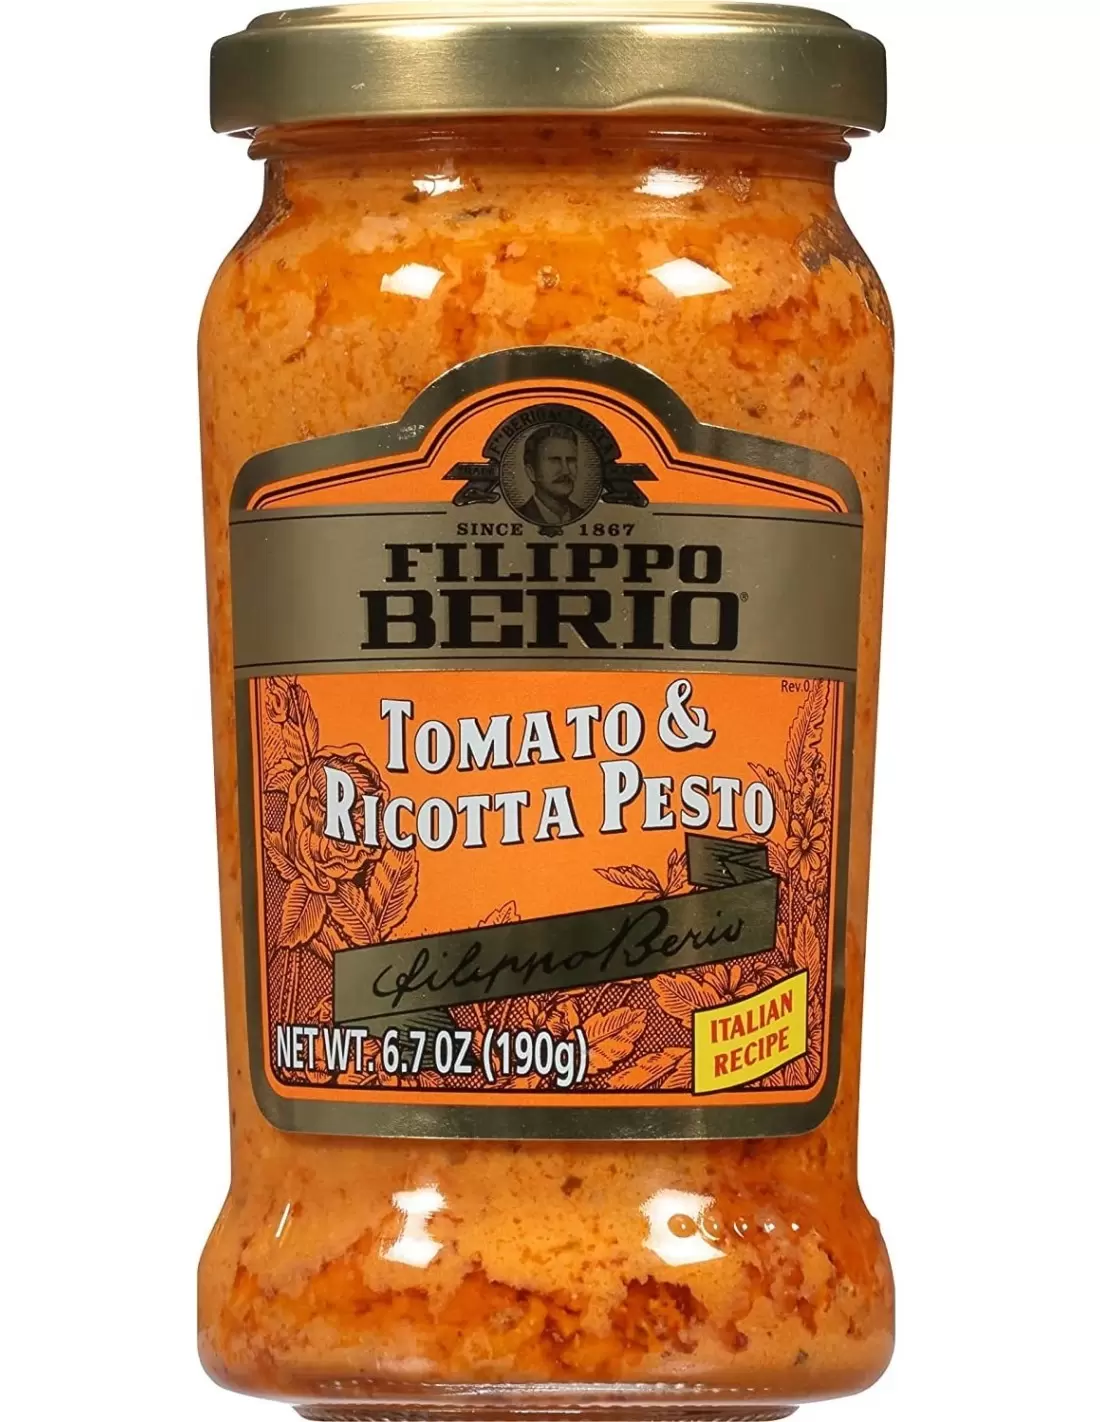 سس گوجه فرنگی و پستو ریکوتا فیلیپو بریو (ترکیبی بی نظیر از گوجه فرنگی و پنیر) - 